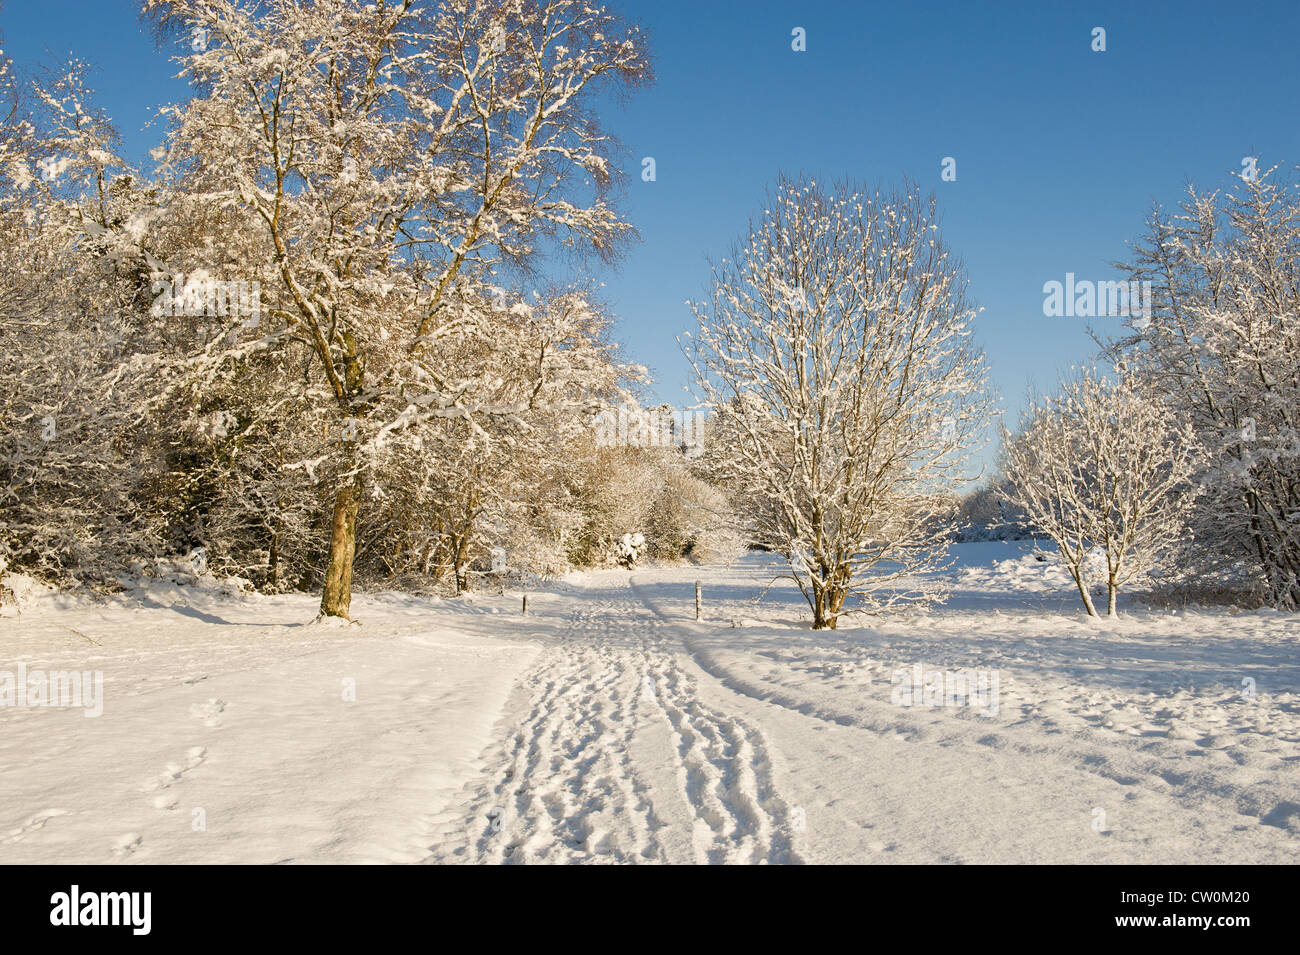 Orme nella neve su una bella e soleggiata scena d'inverno. Foto Stock